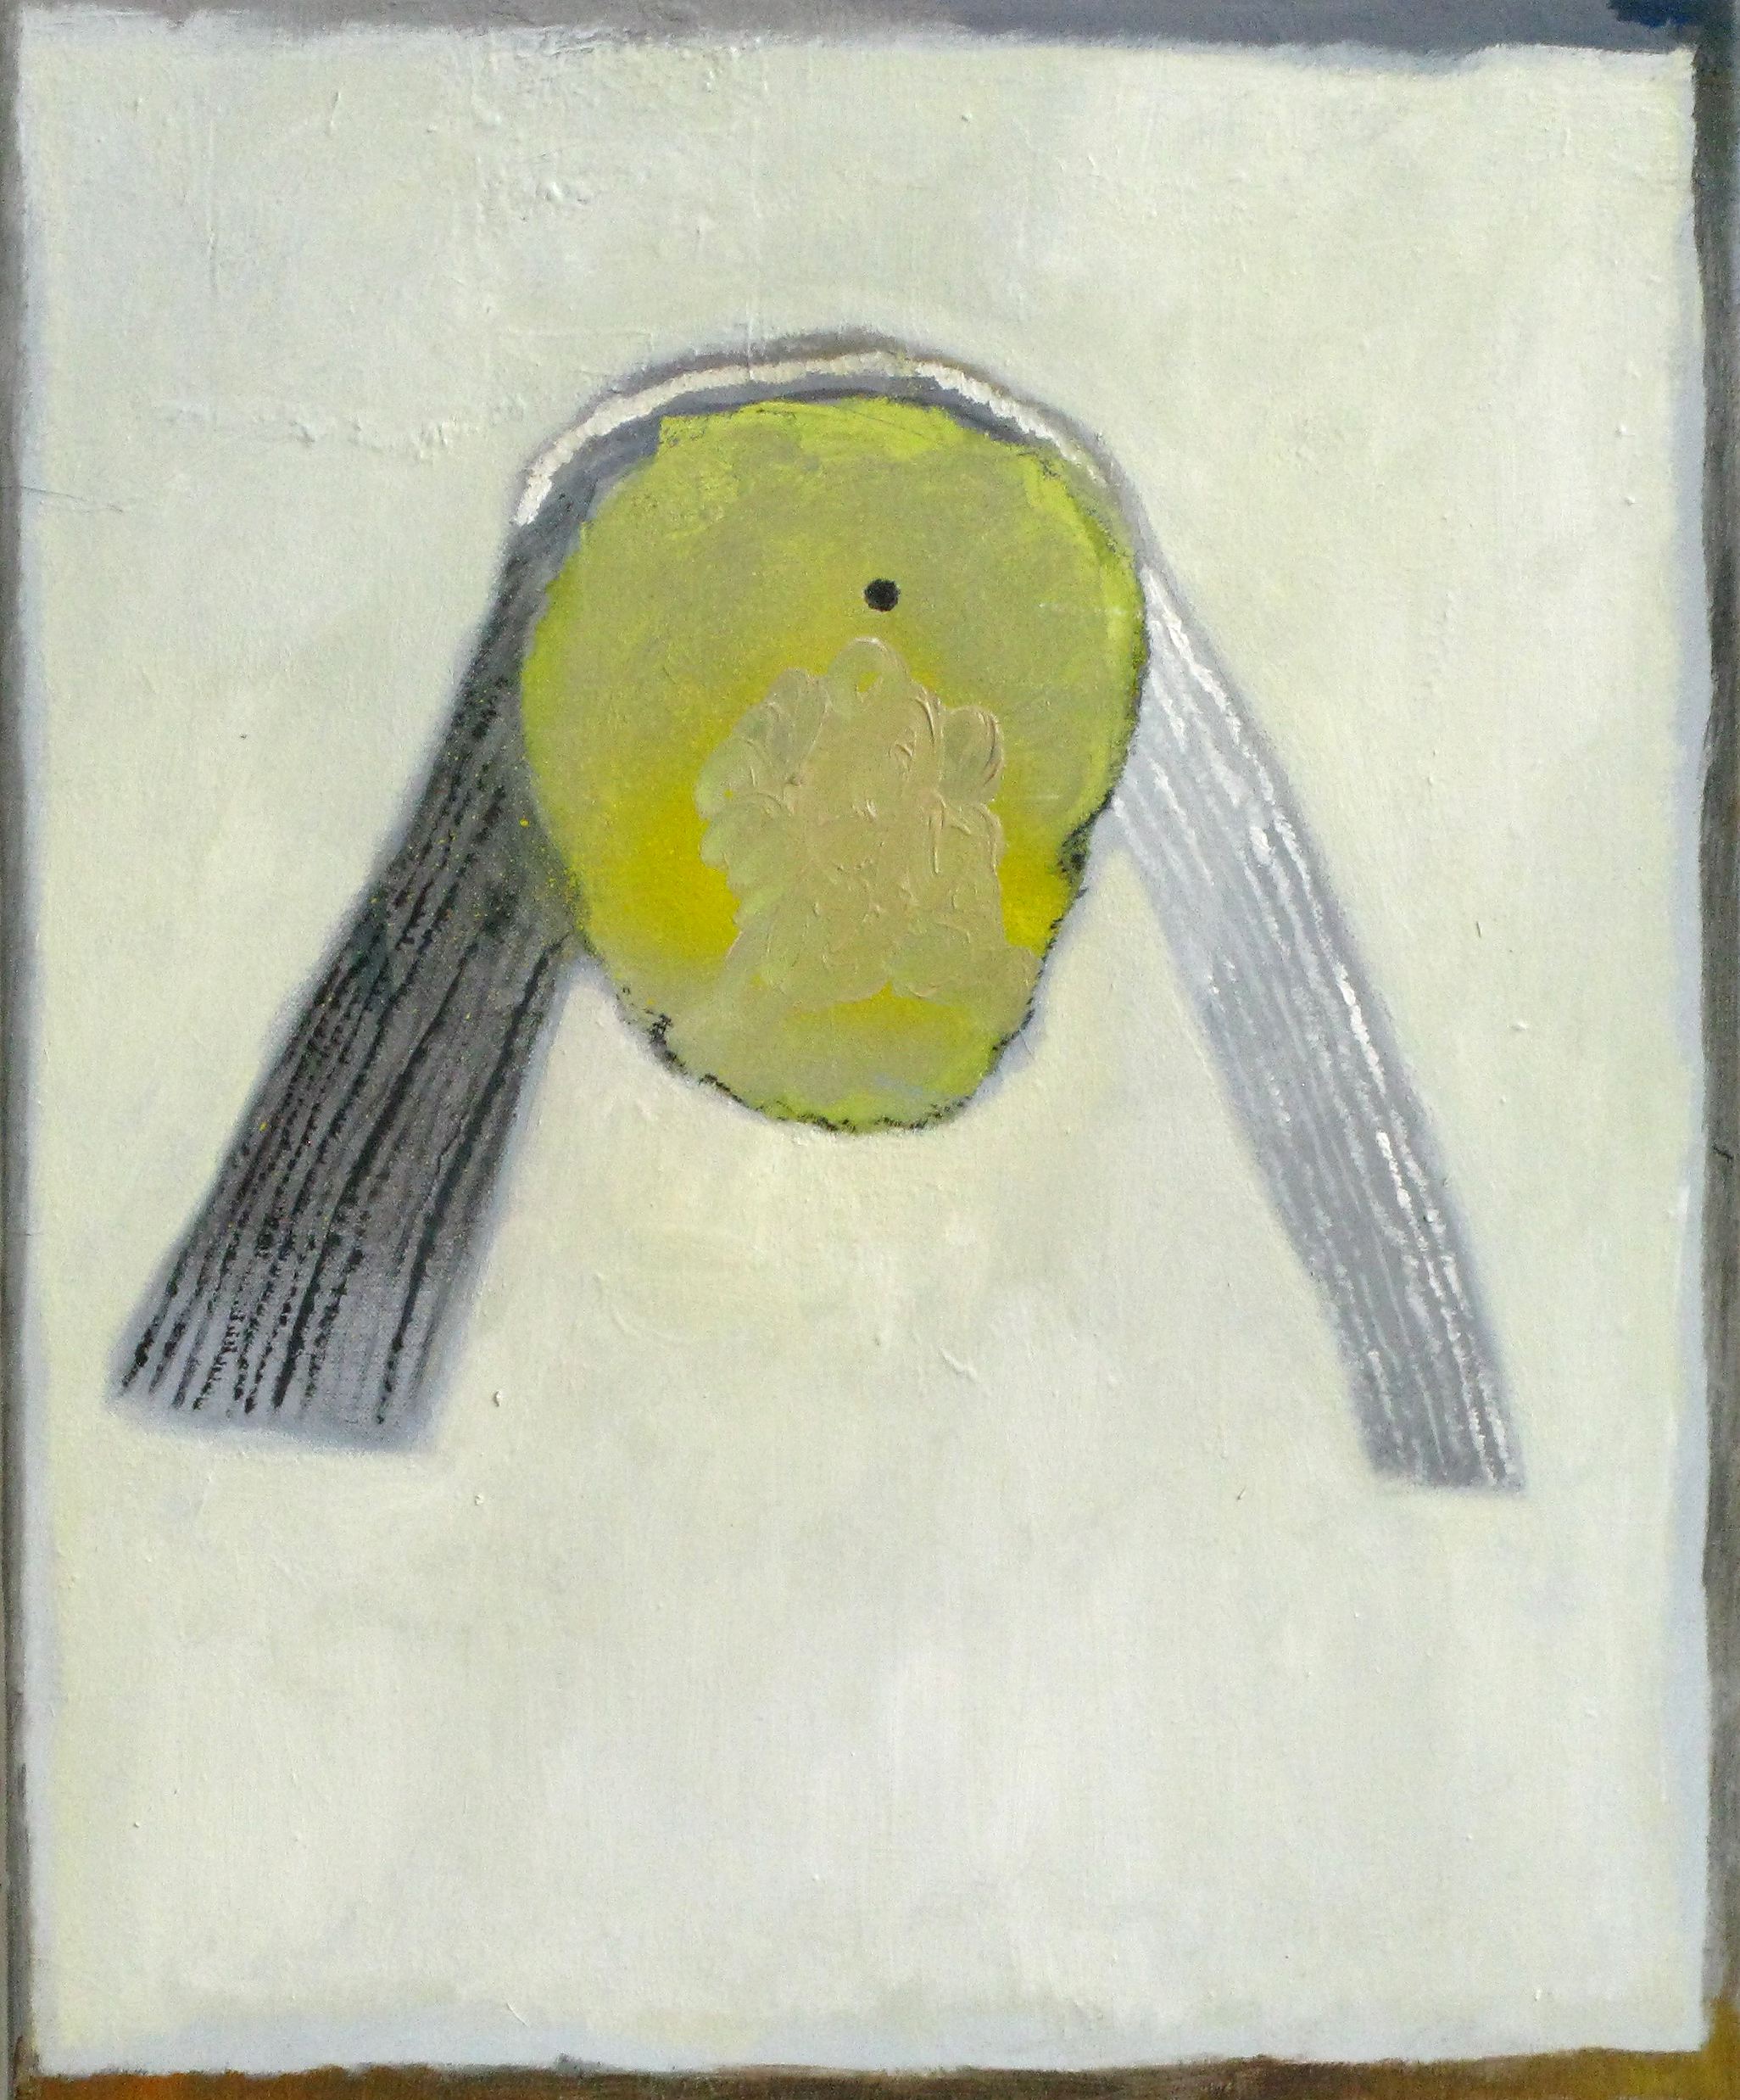   CHRISTOPH ROßNER   Big Light,&nbsp; oil on canvas, 25.5" x 19.5", 2009 